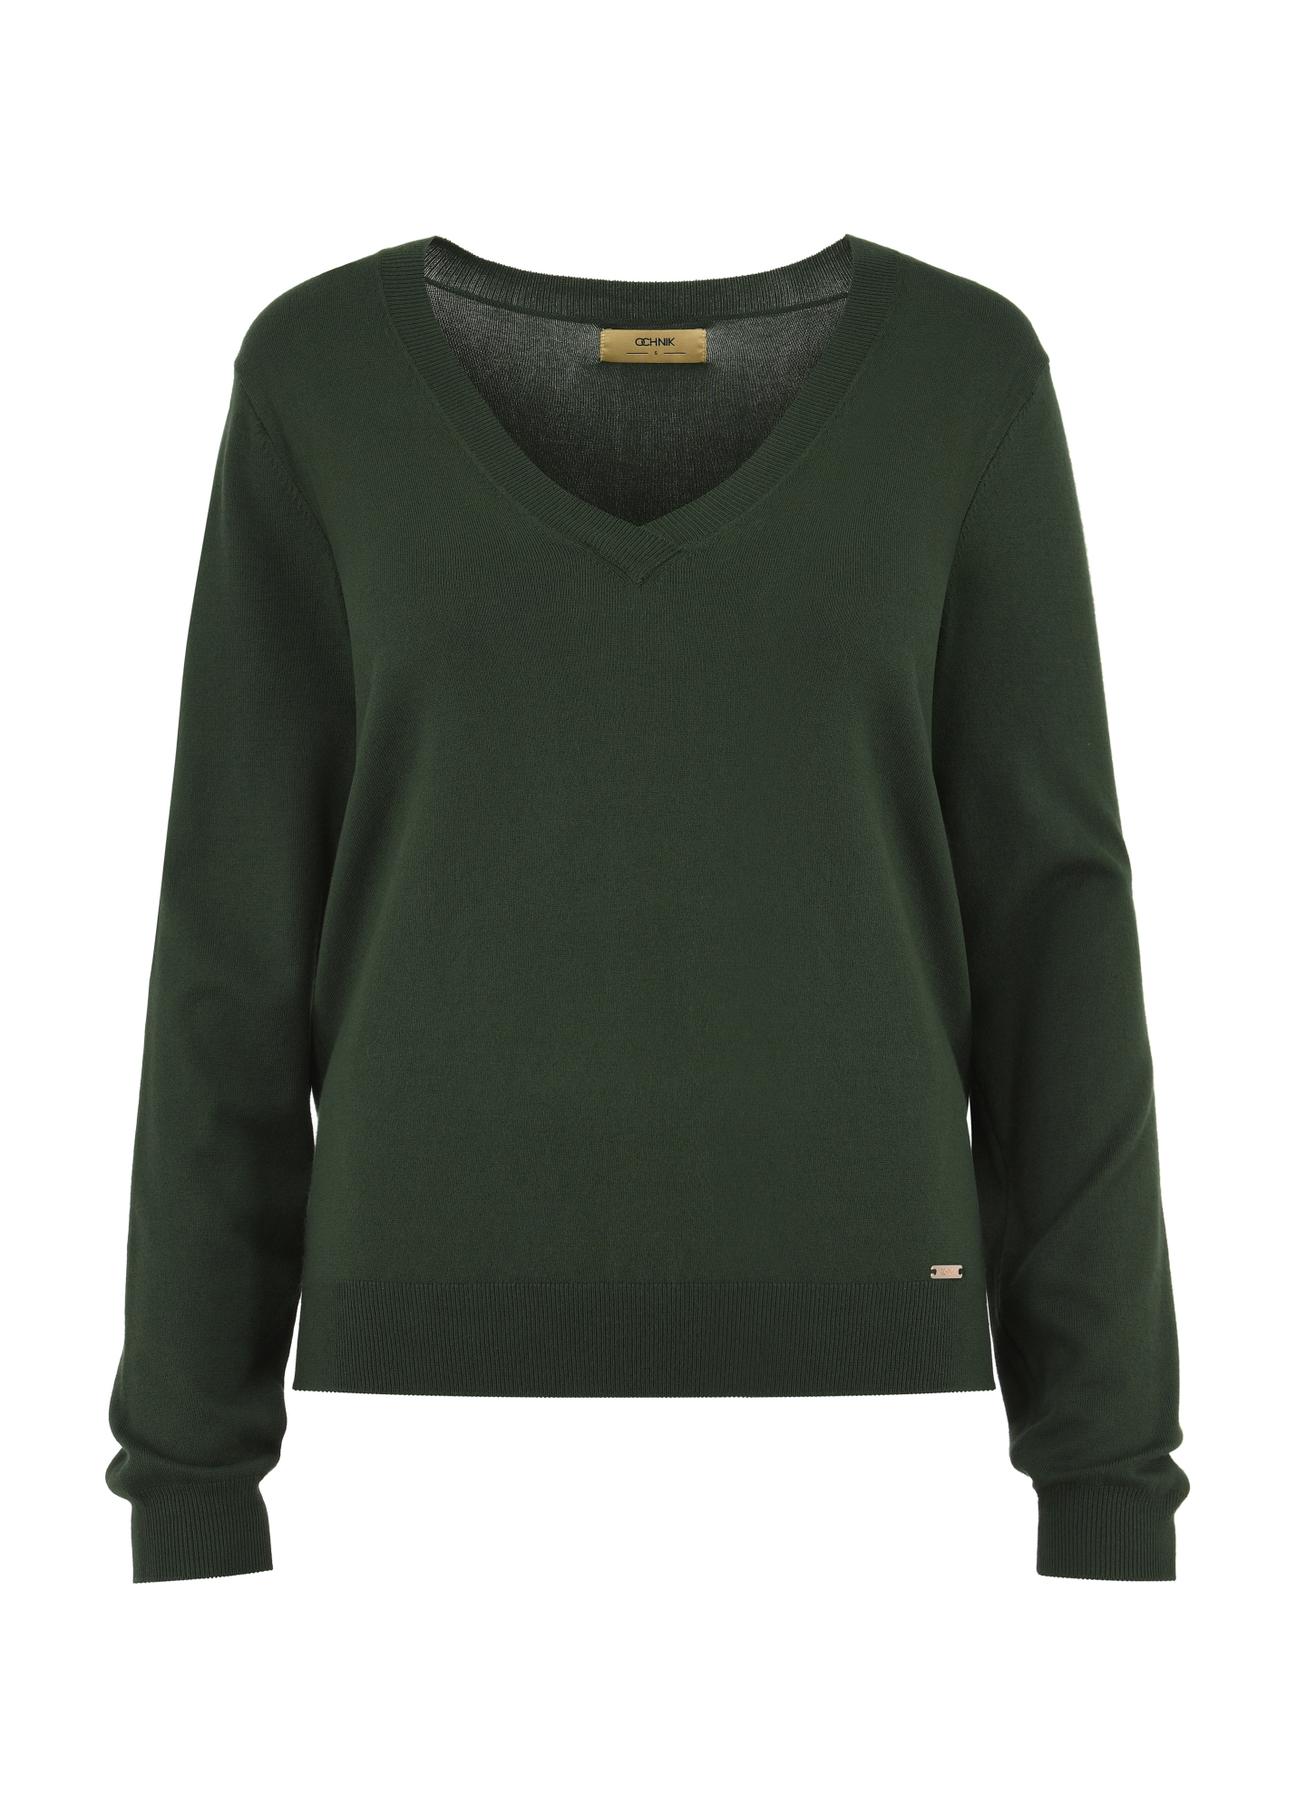 Zielony sweter z dekoltem V-neck SWEDT-0201-55(W24)